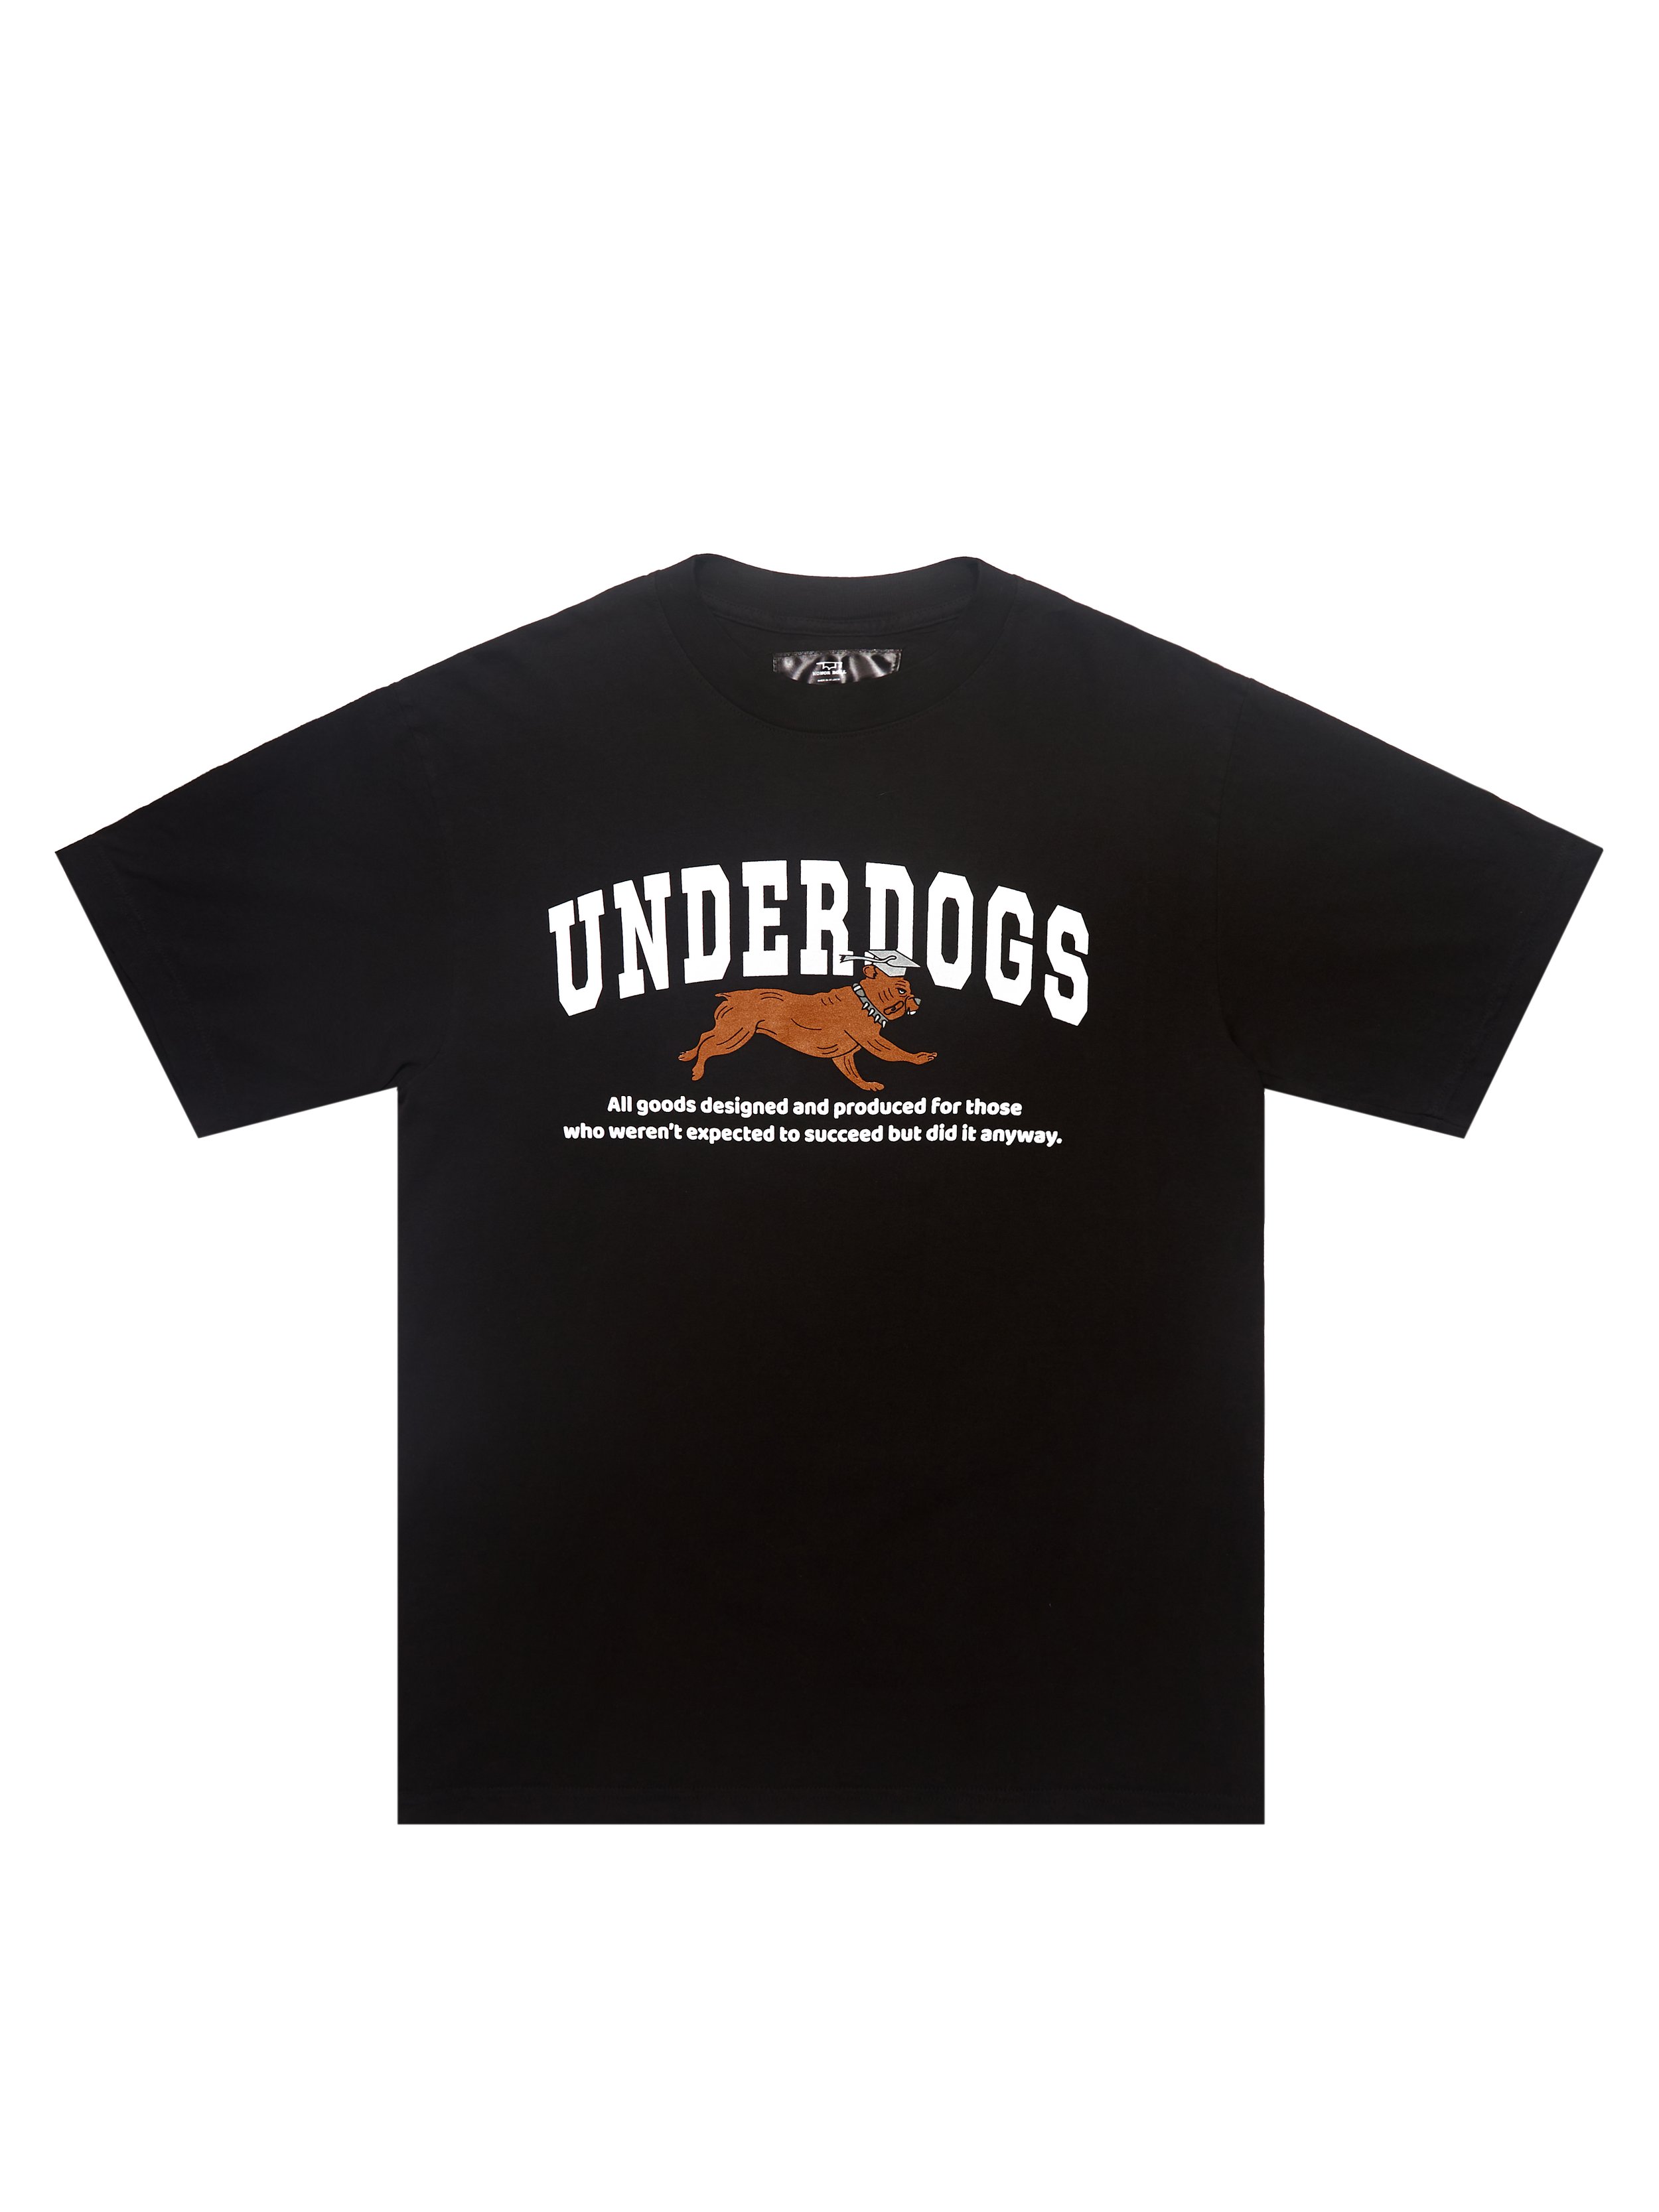 Underdog-1.jpg